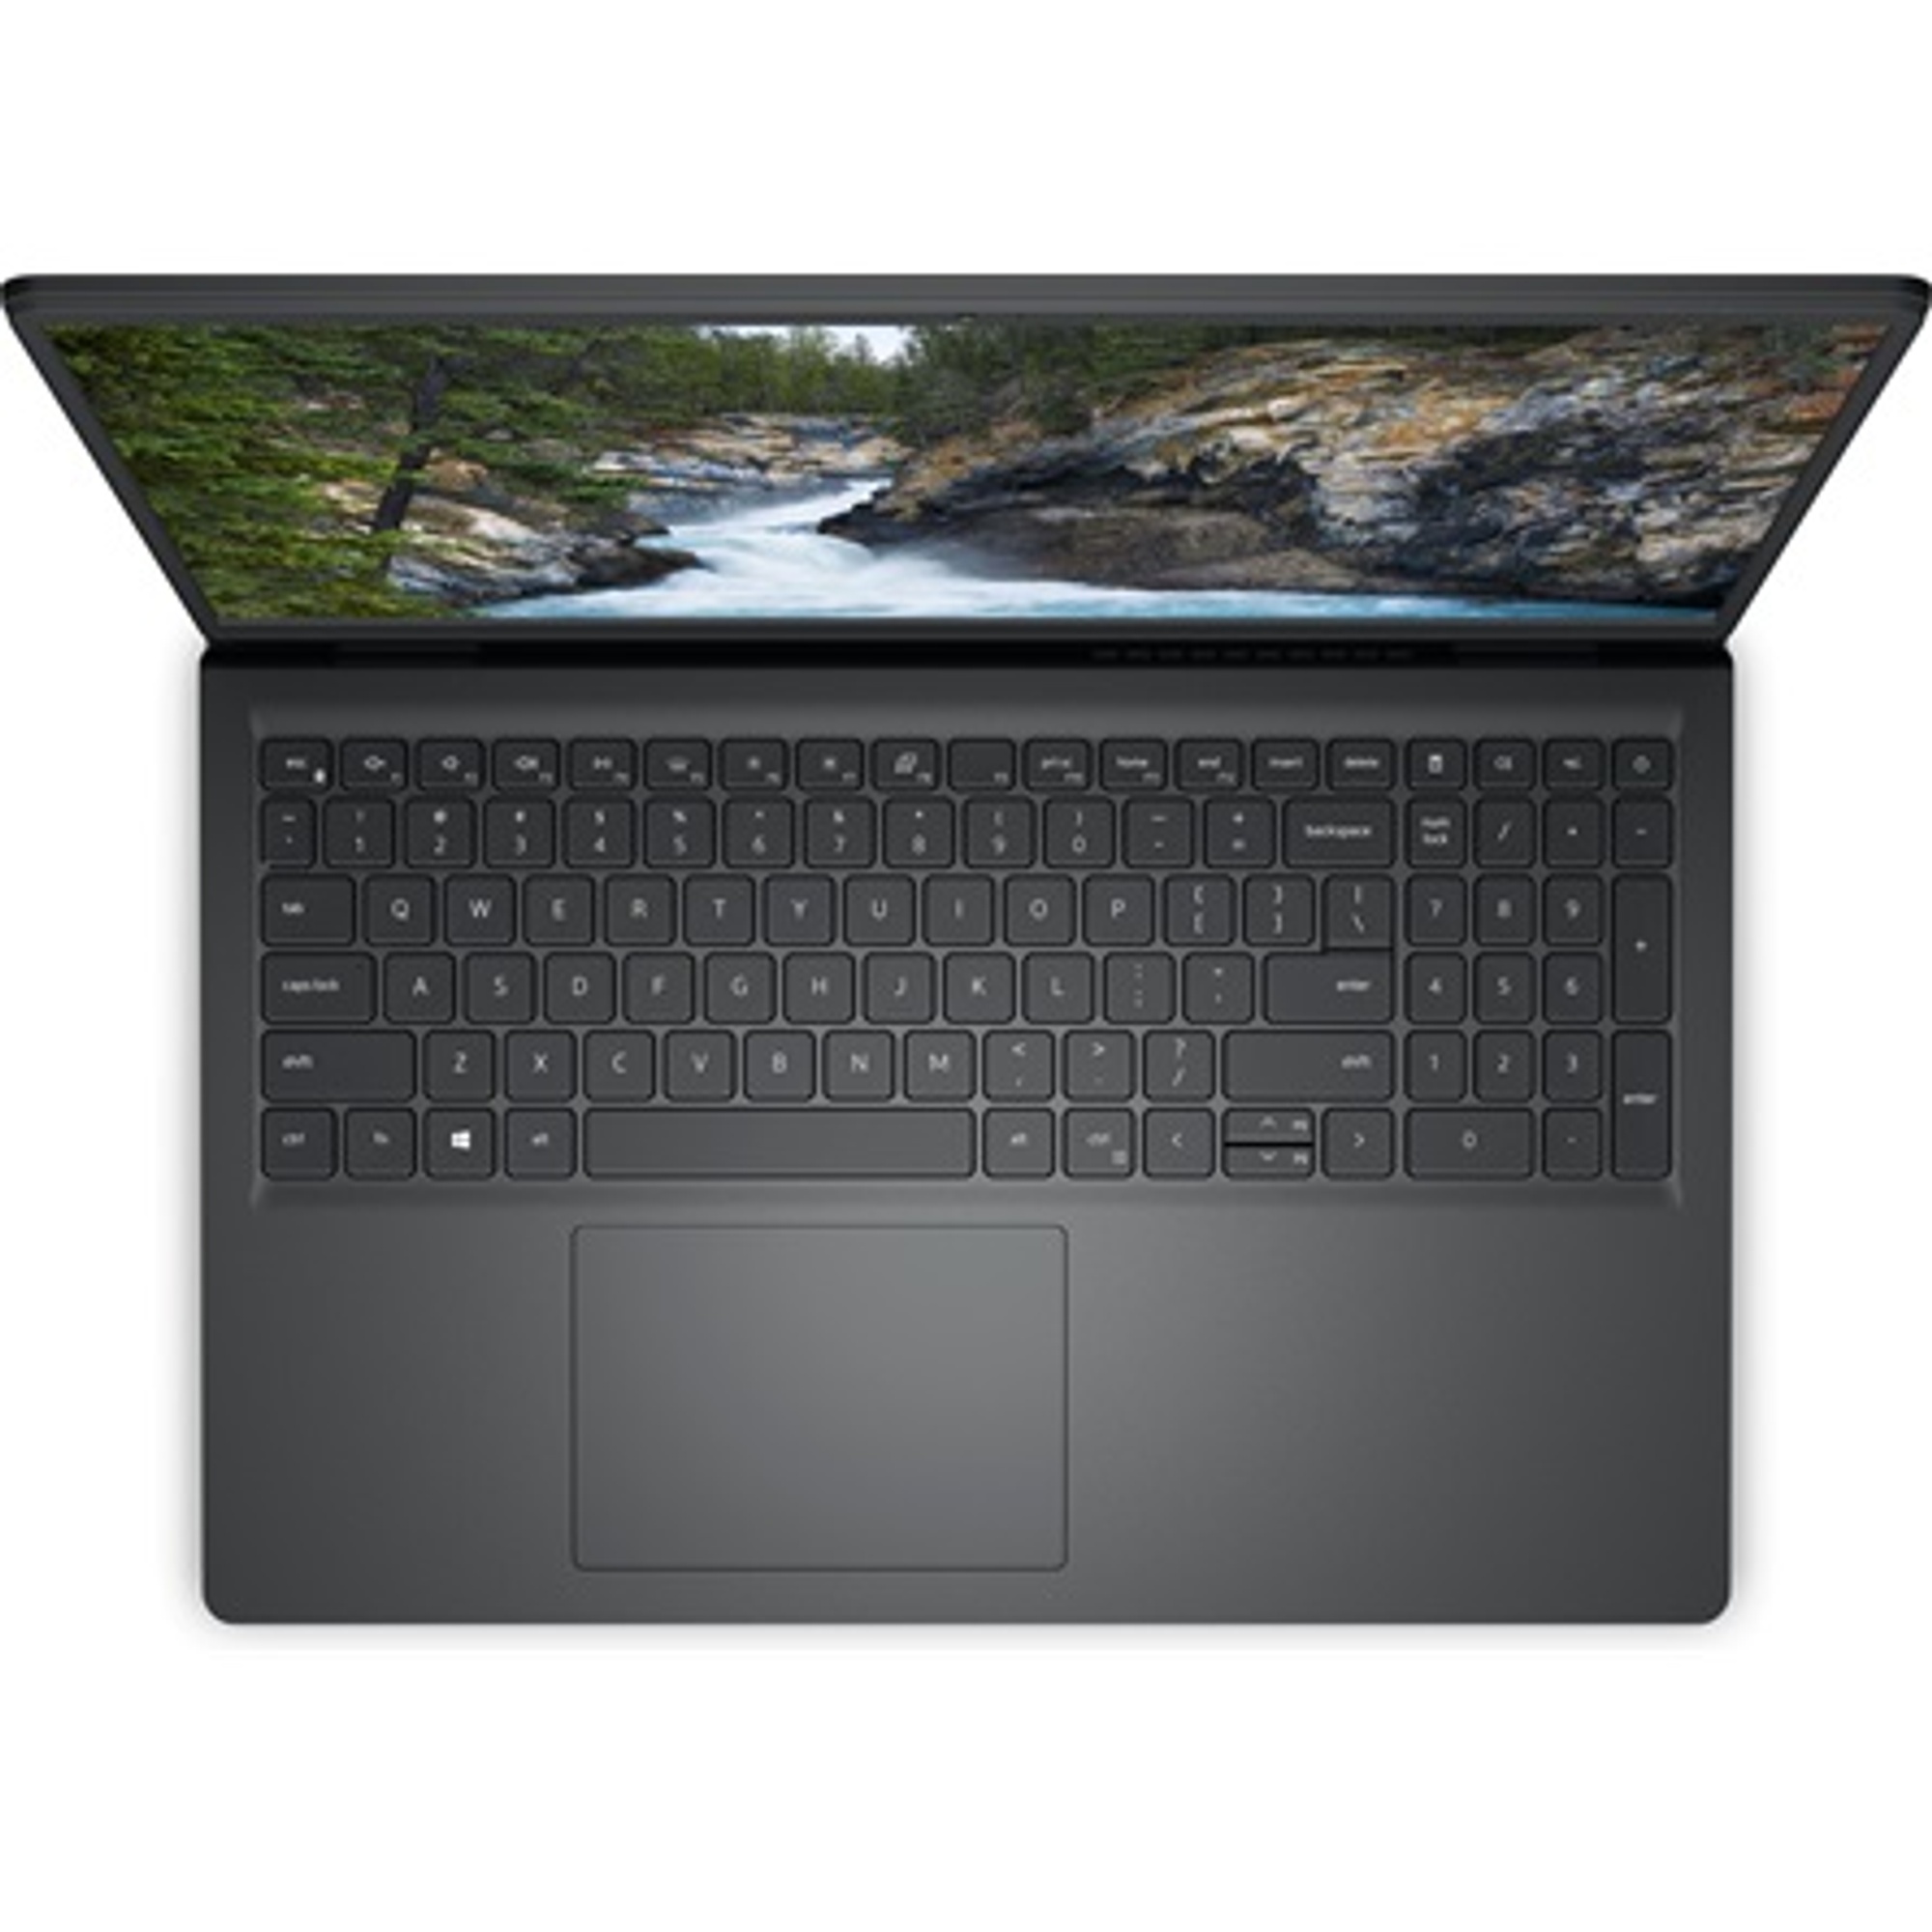 DELL V3510-63 Laptop / Notebook 1